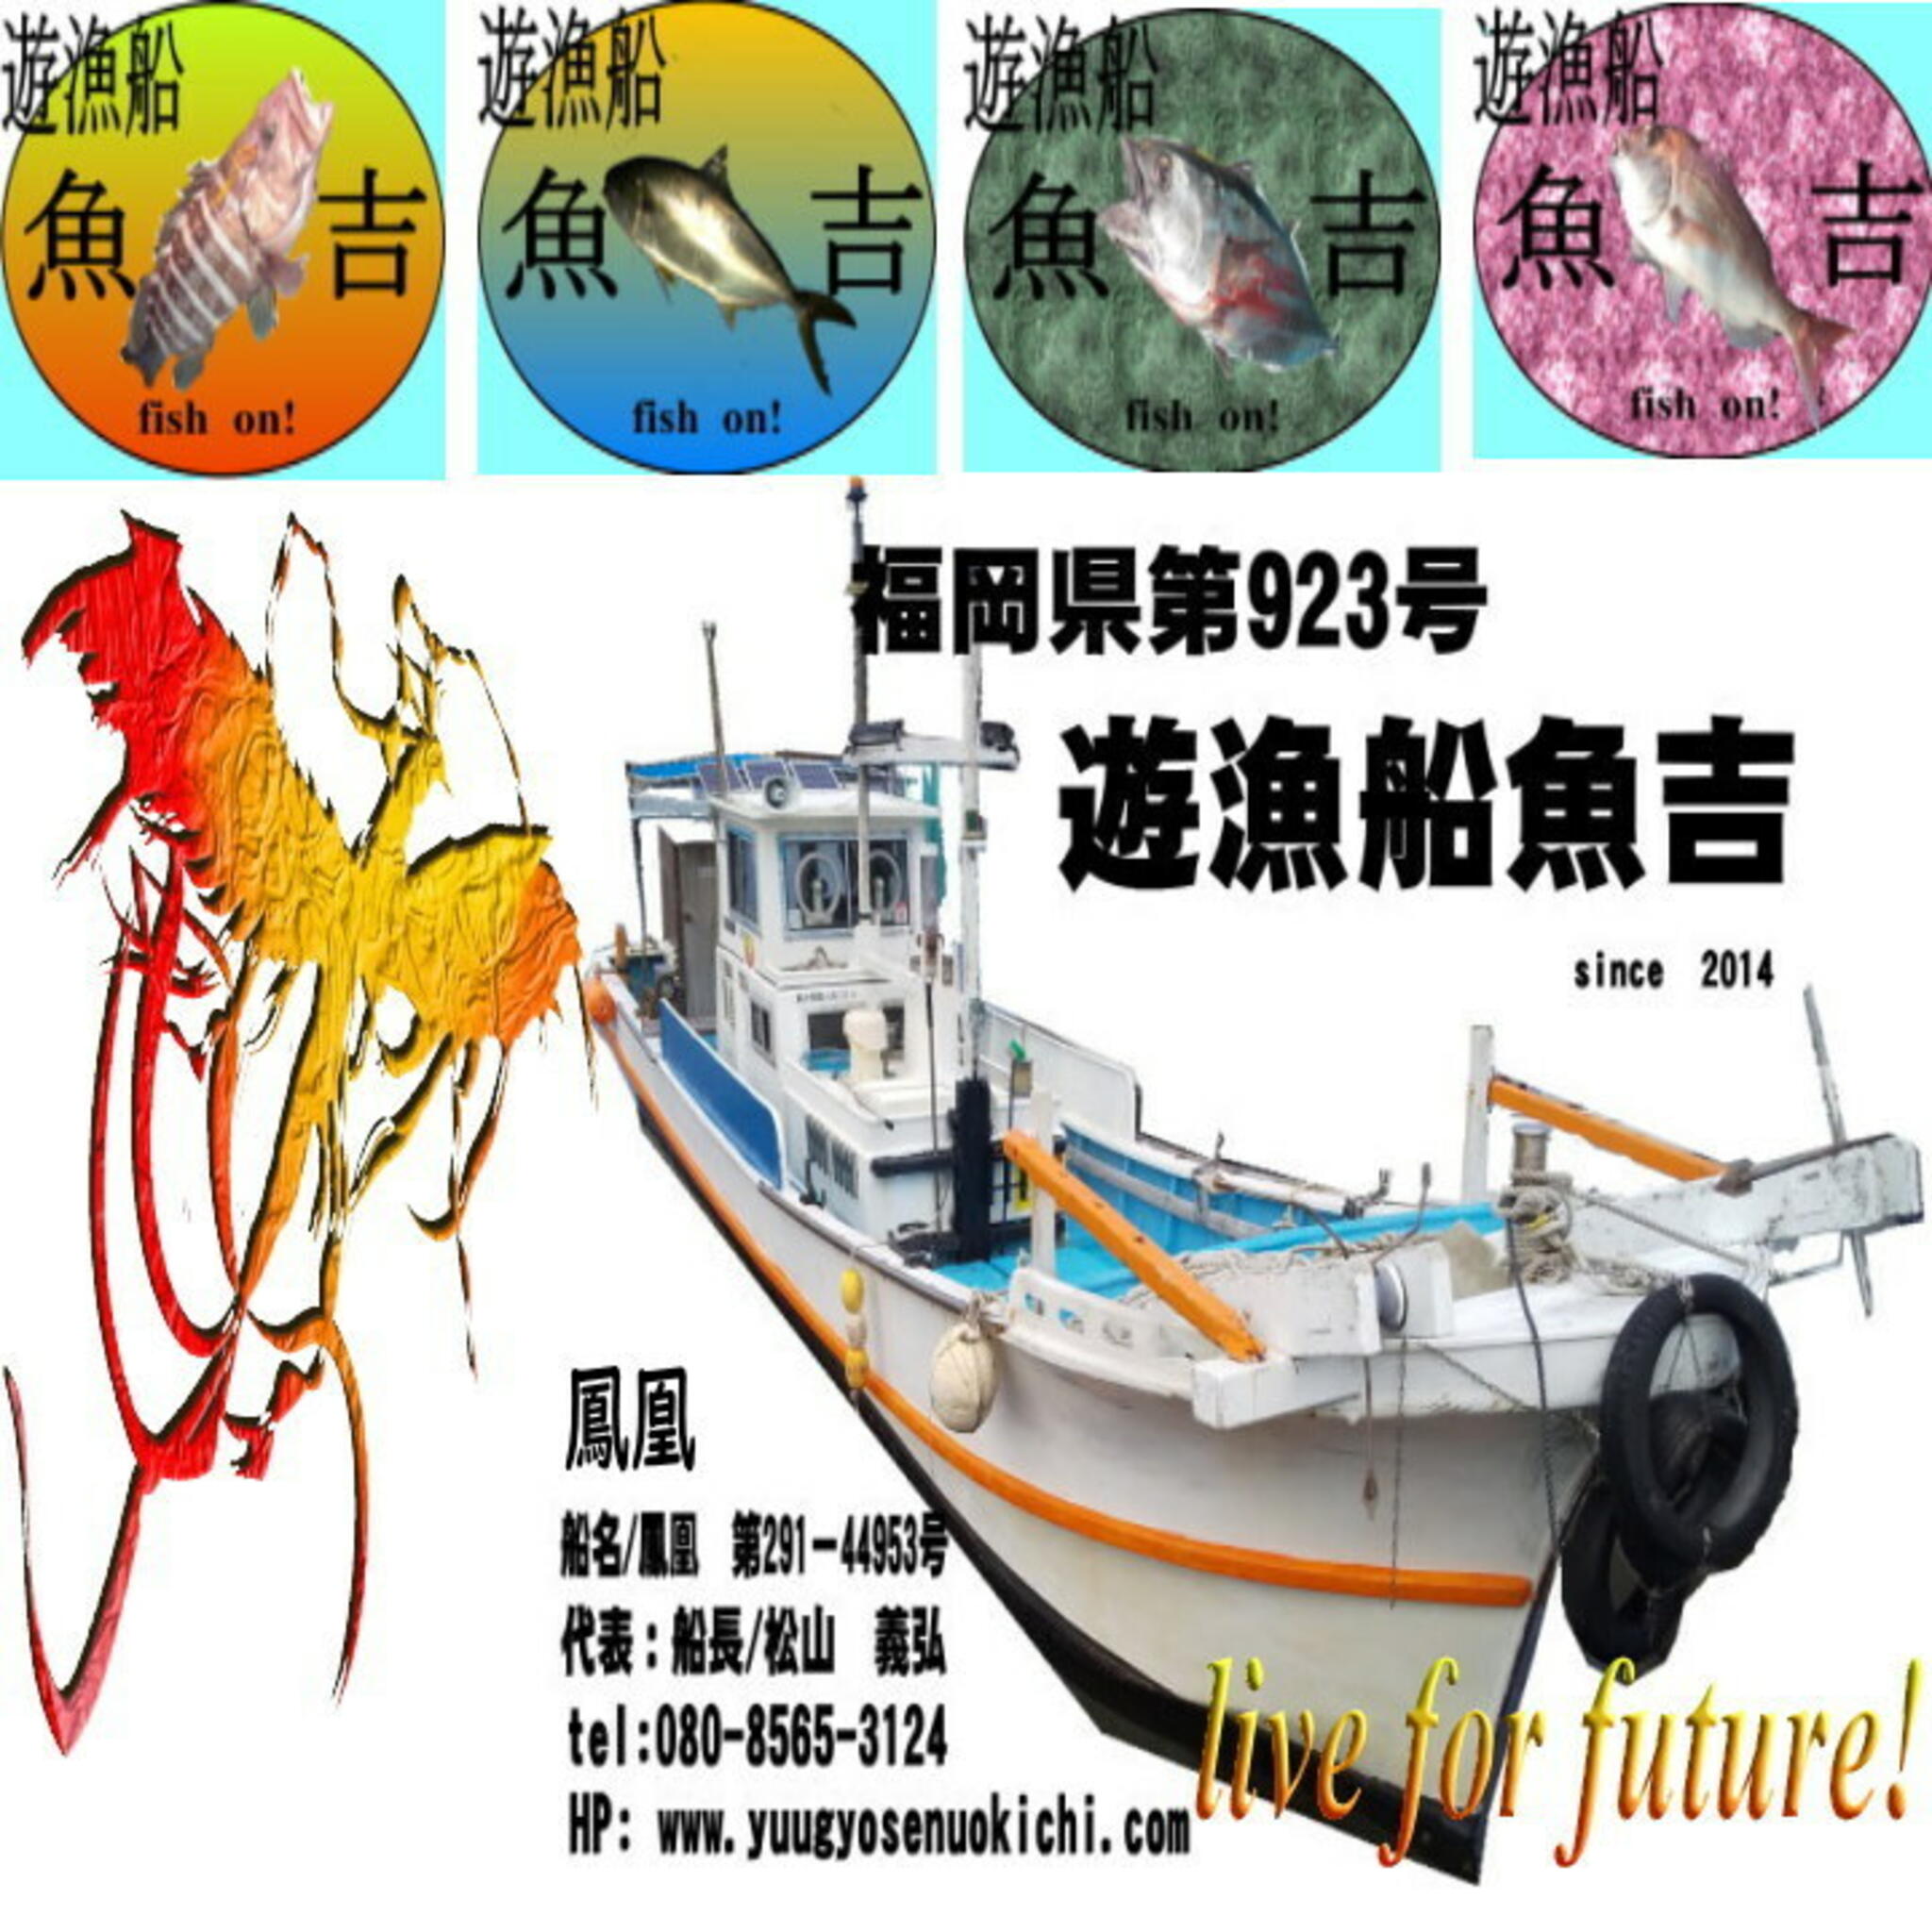 遊漁船魚吉の代表写真1